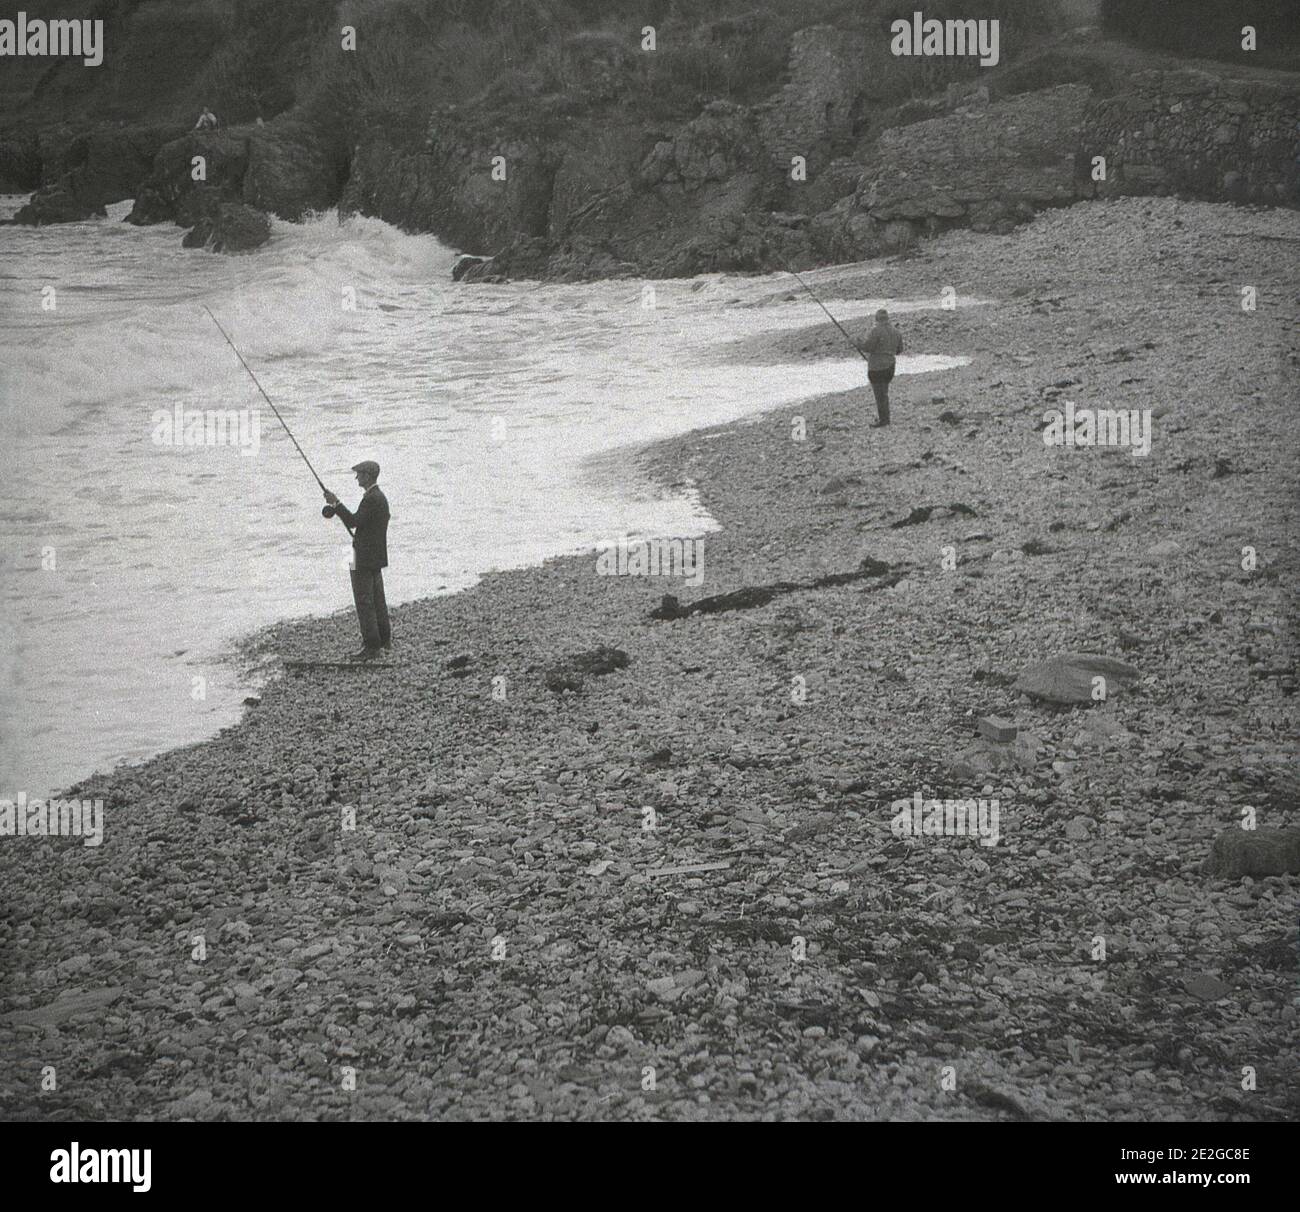 1960er Jahre, historisch, in einer geschützten Bucht, an einem steinigen Strand, zwei Männer in Watvögeln Seefischen, von einer Person in der Ferne sitzen auf den Klippen mit Blick auf die Bucht, England, Großbritannien beobachtet. Stockfoto